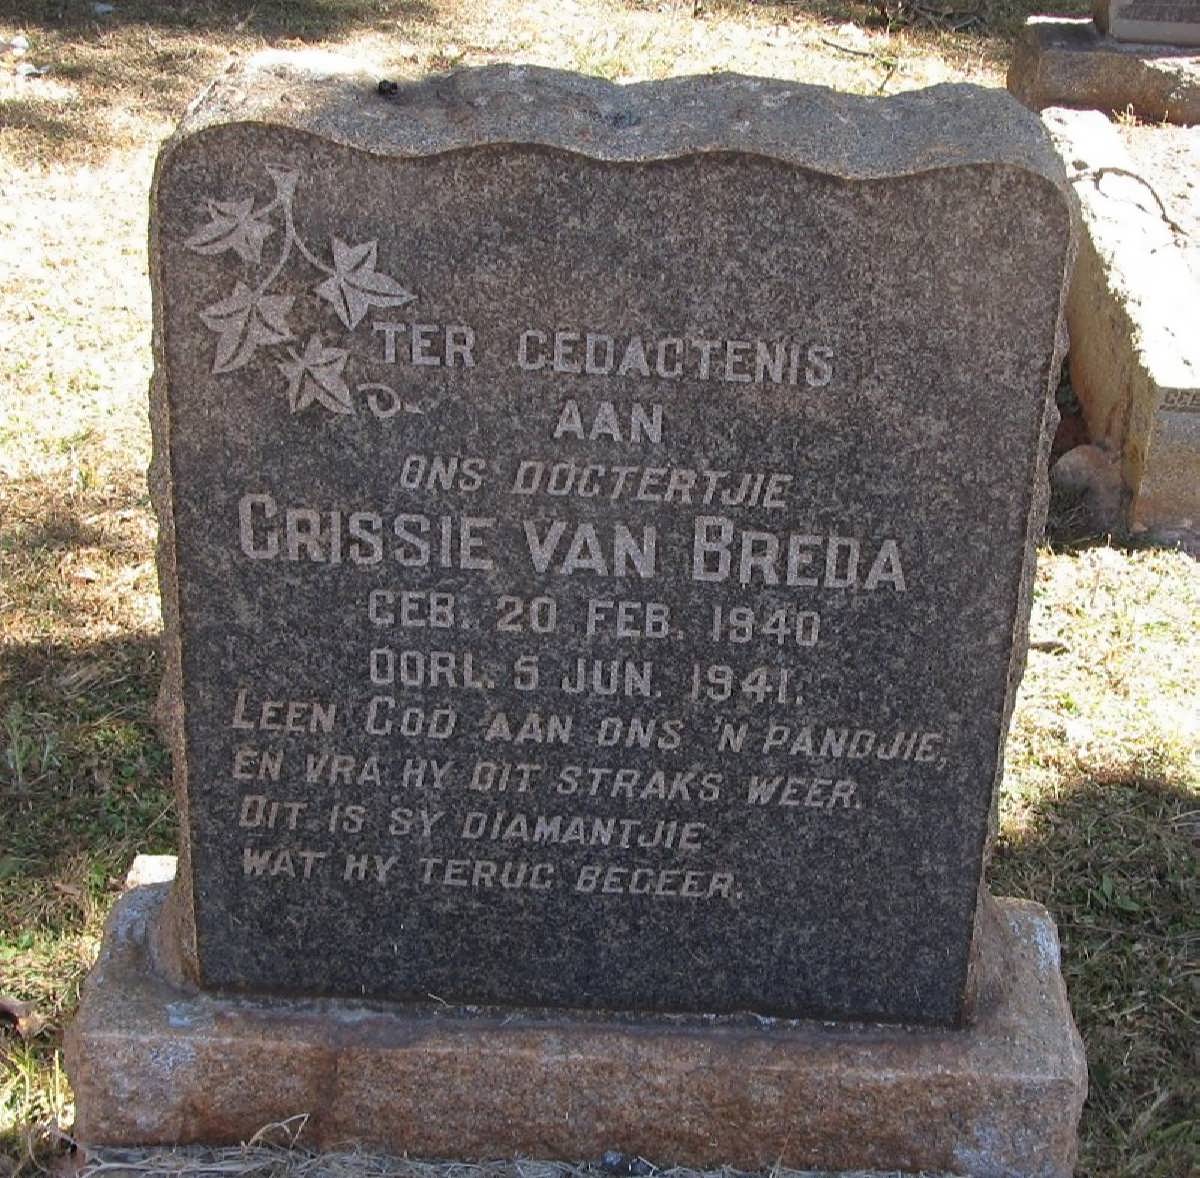 BREDA Crissie, van 1940-1941